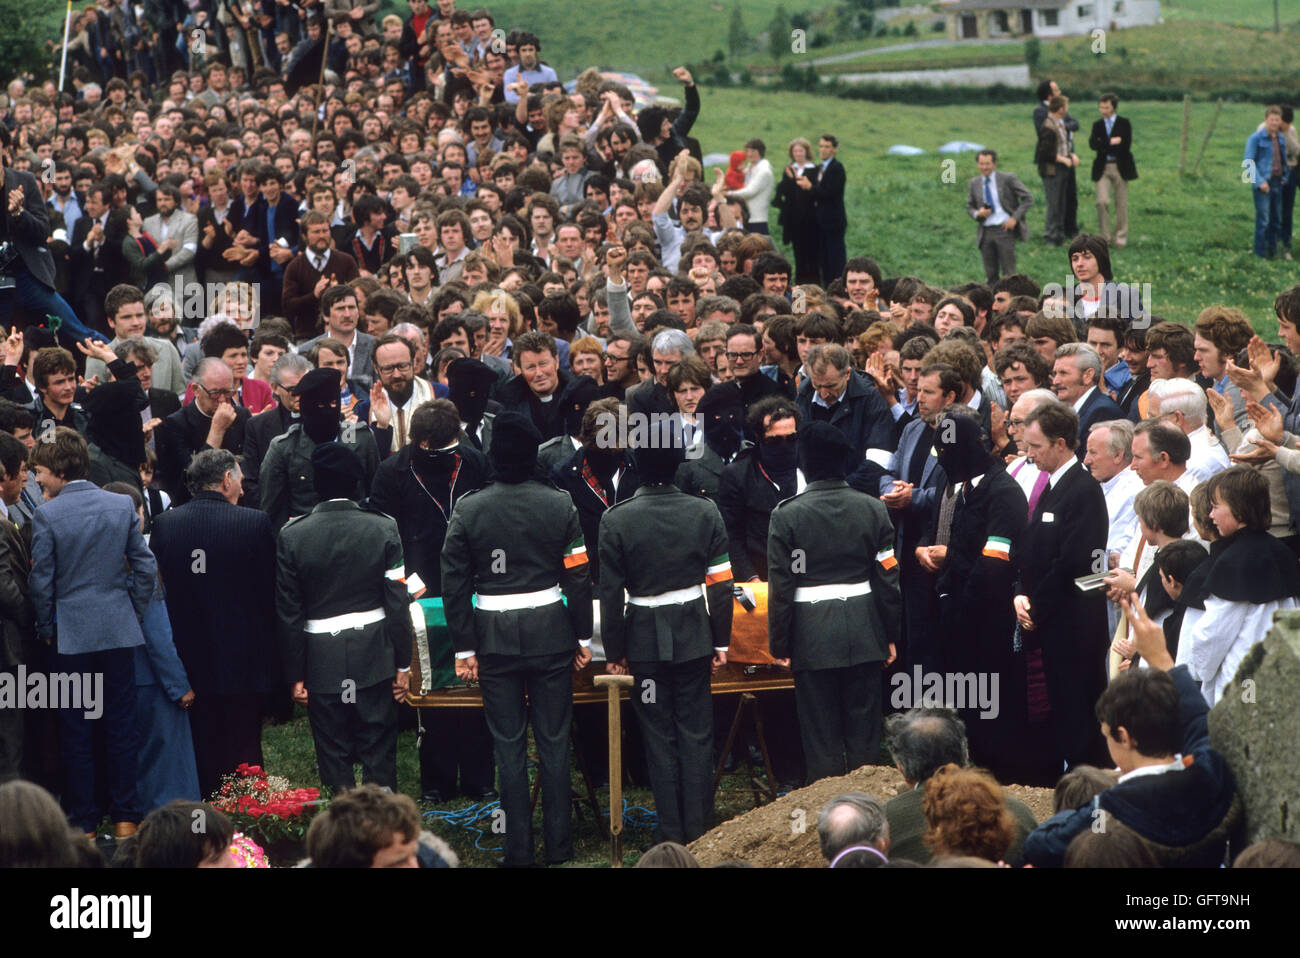 Martin Hurson paramilitaires funéraires des soldats de l'IRA dans le déguisement porter coffin Juillet 1981 Philippe Mathieu comté de Tyrone en Irlande du Nord. Les troubles des années 1980, il est mort à Long Kesh en grève de la faim HOMER SYKES Banque D'Images